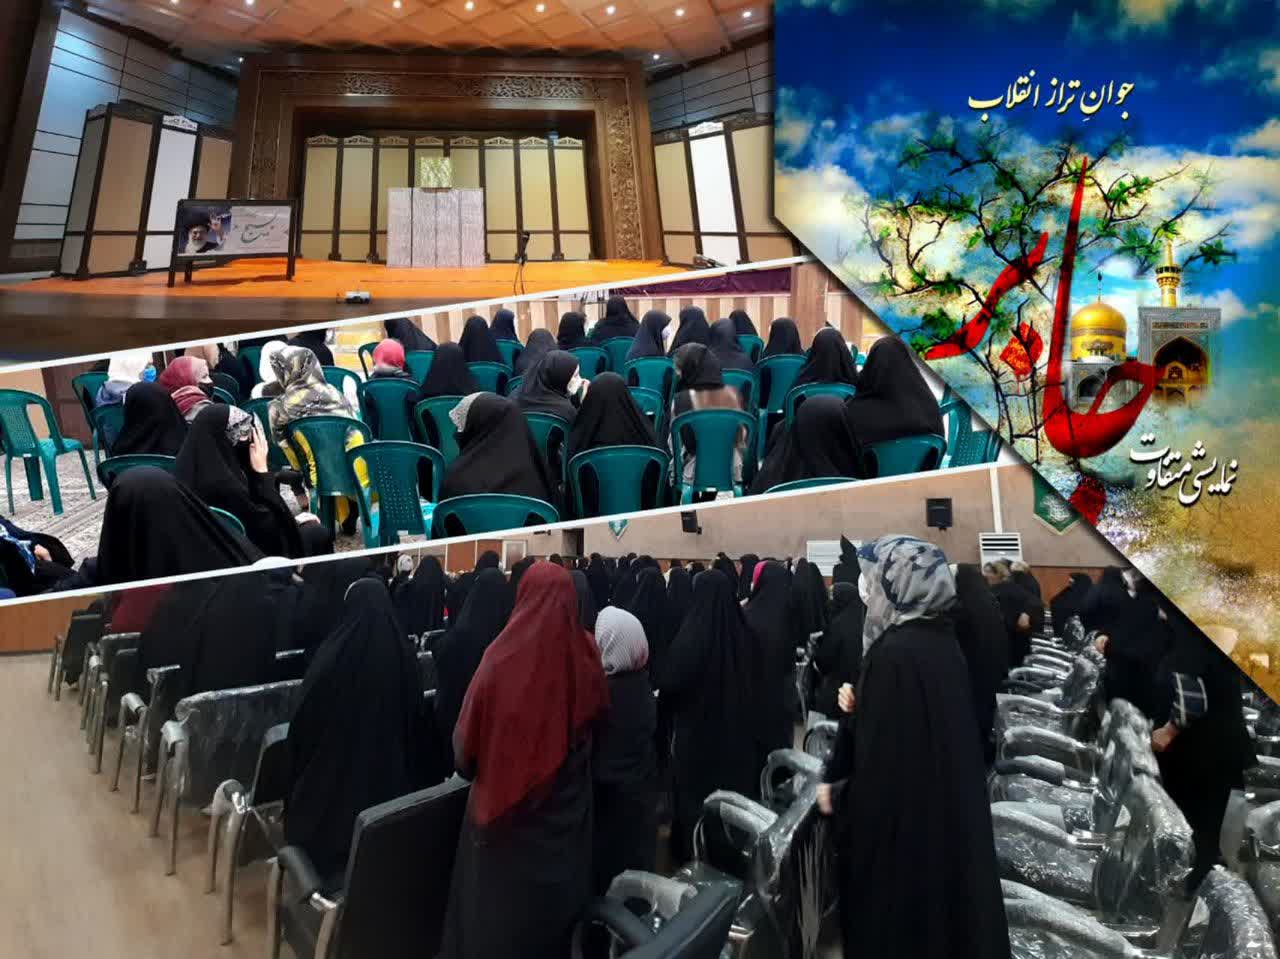 بار دیگر تئاتر جابر در مشهد